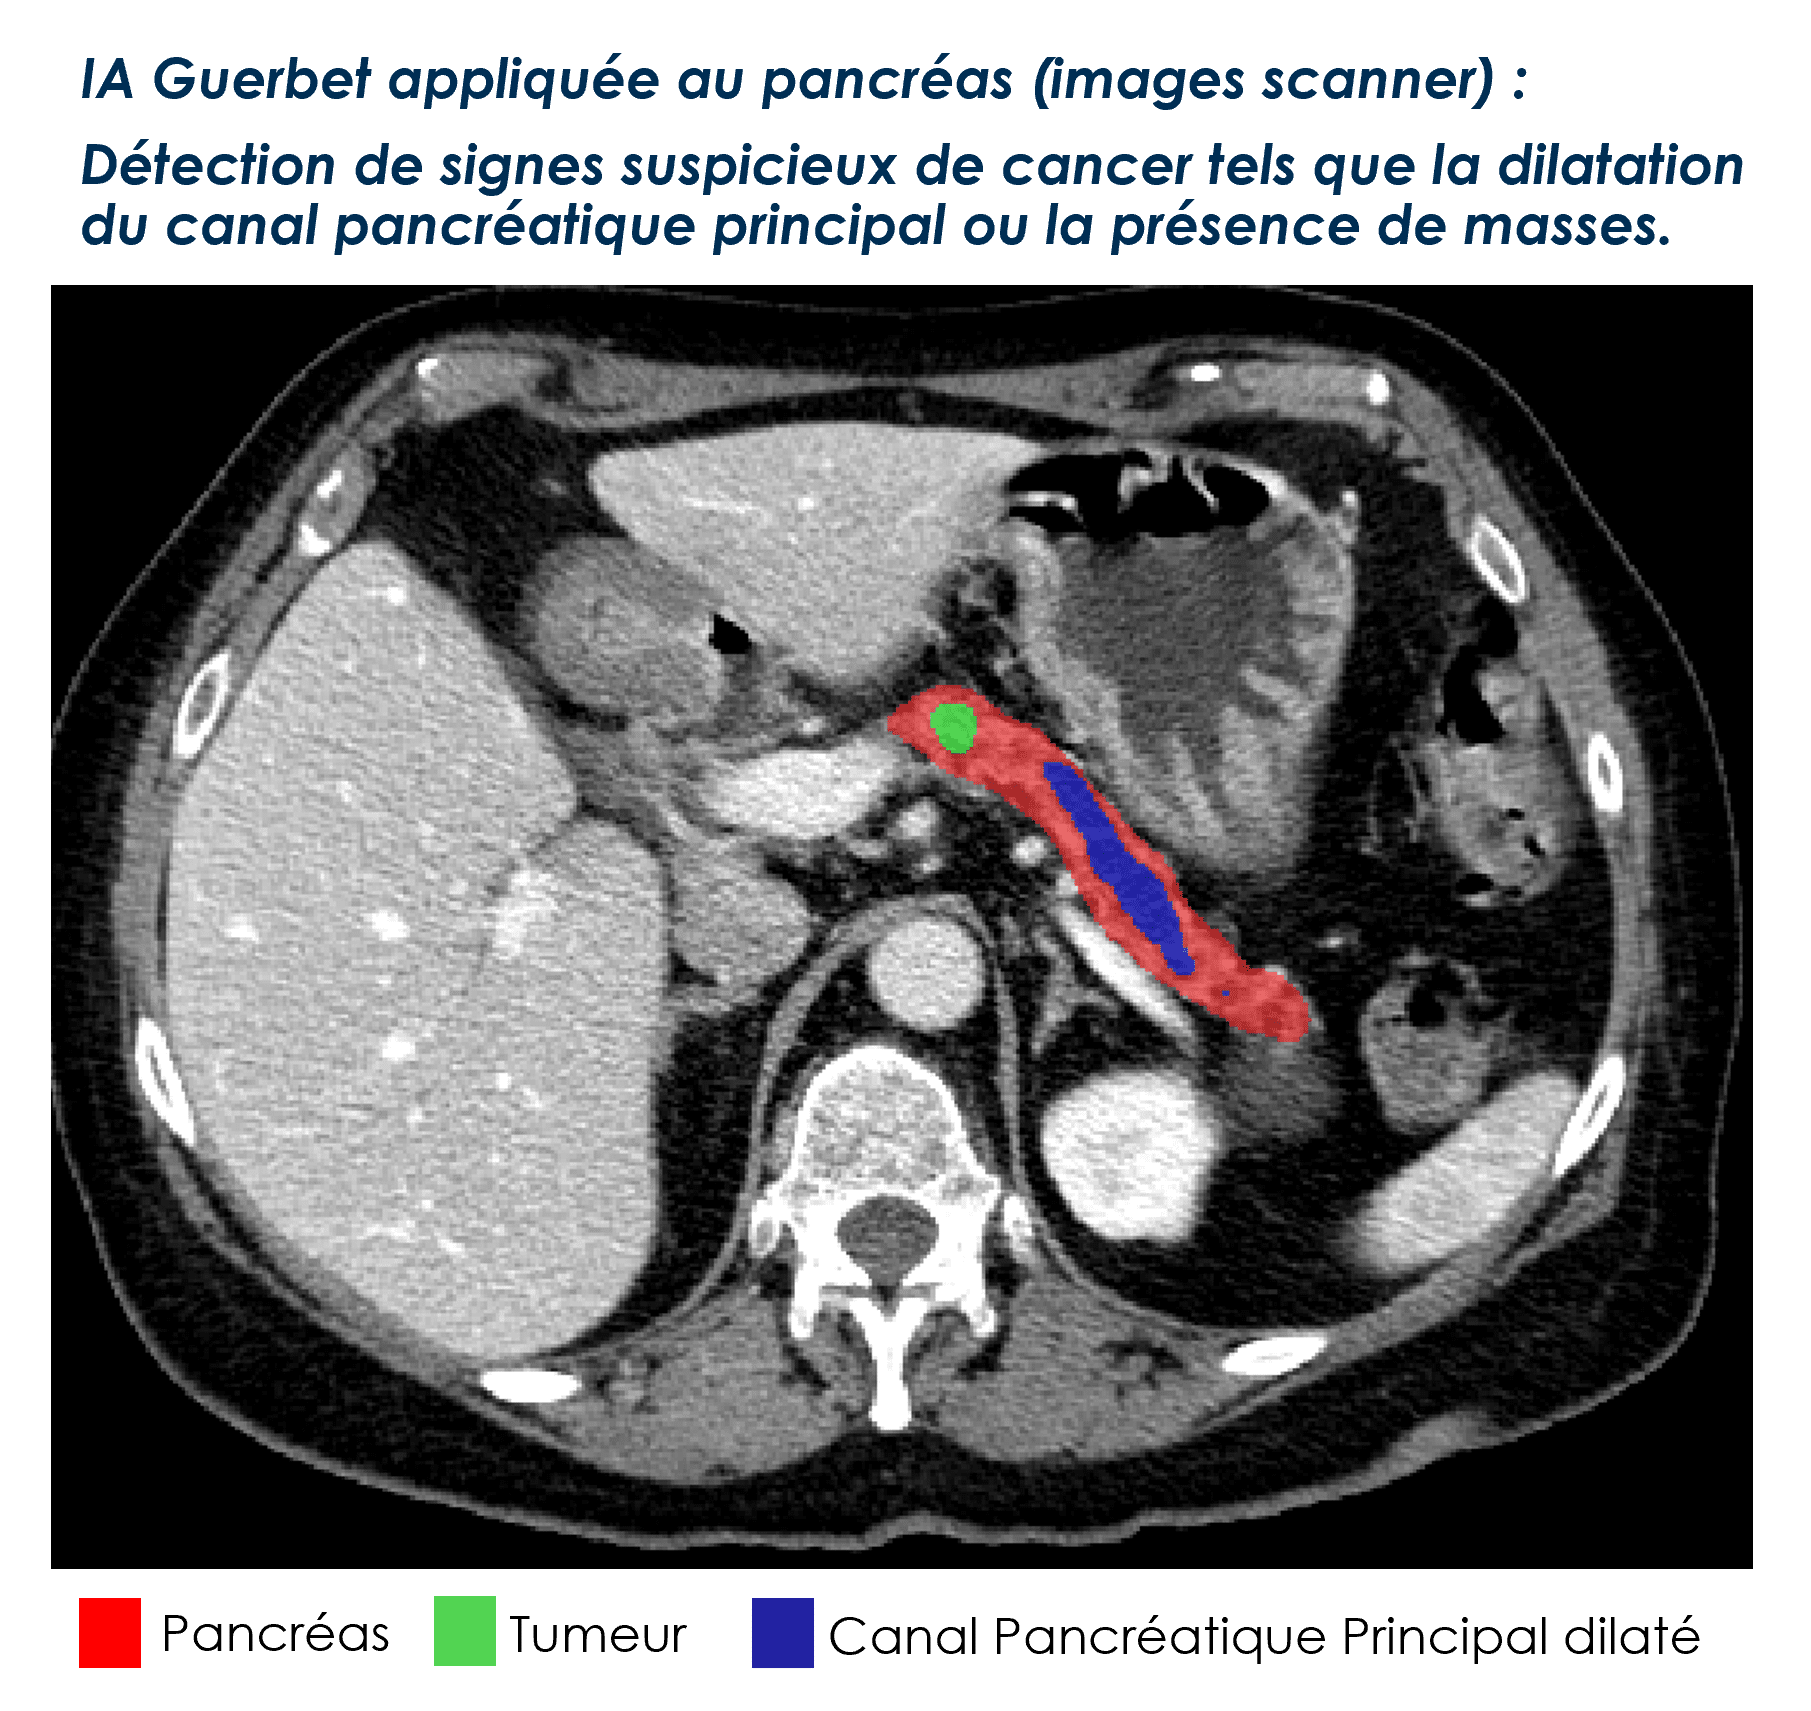 IA Guerbet appliquée au pancréas (images scanner) : Détection de signes suspicieux de cancer tels que la dilatation du canal pancréatique principal ou la présence de masses.